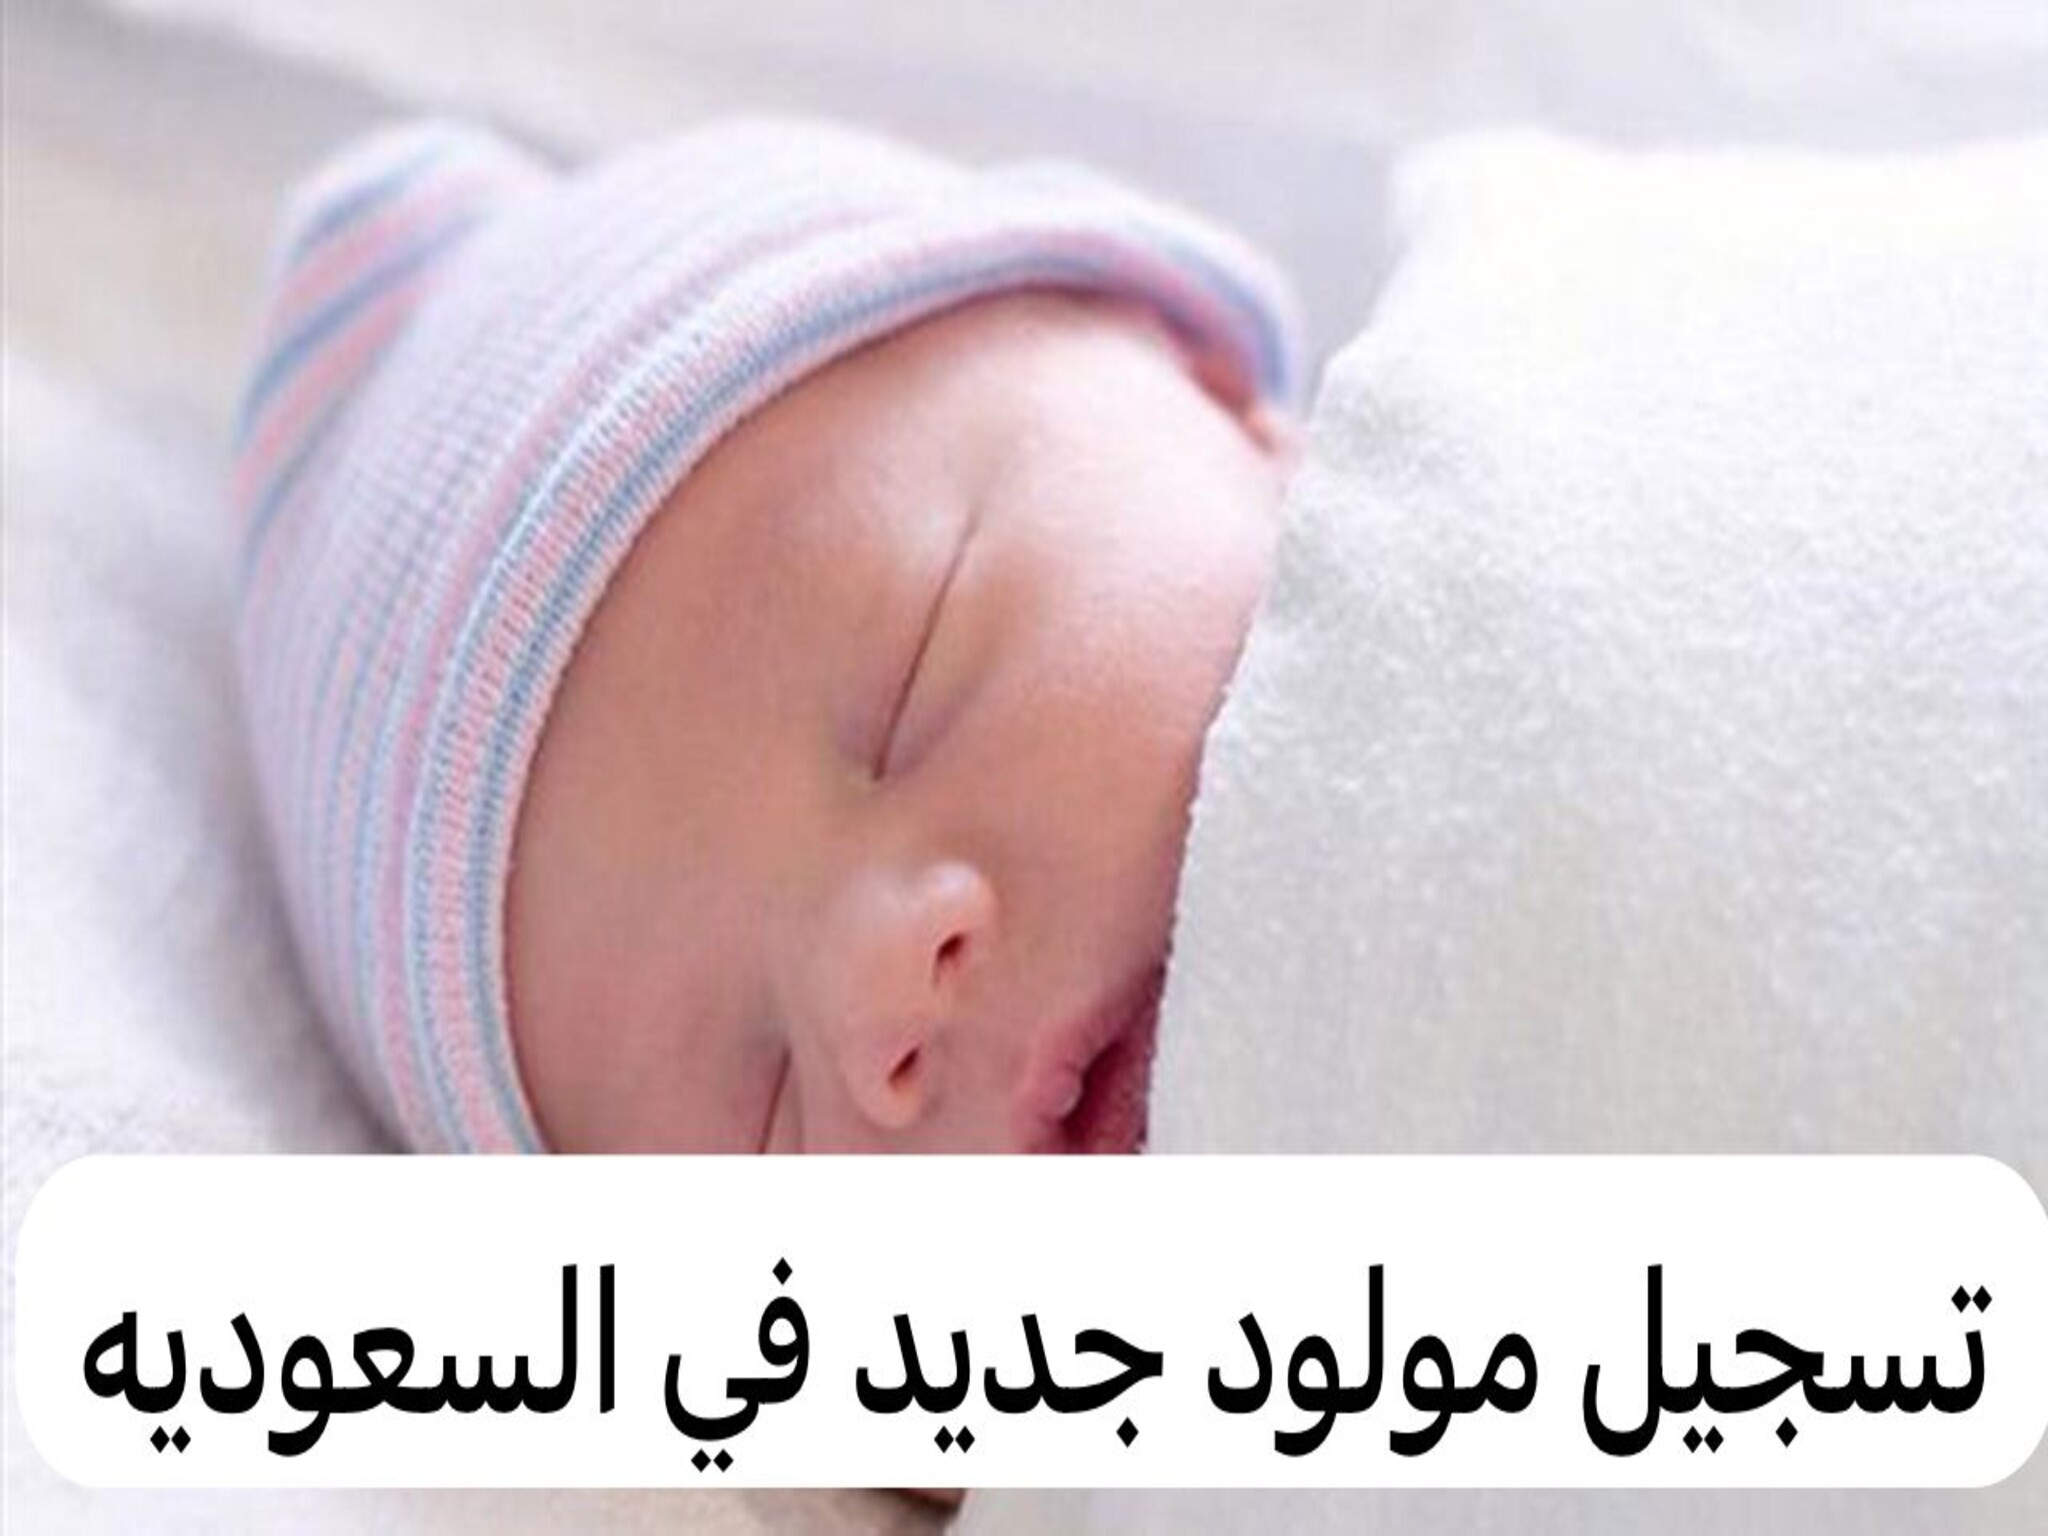 كيفية إضافة مولود جديد في حساب المواطن 1446 بالمملكة السعودية